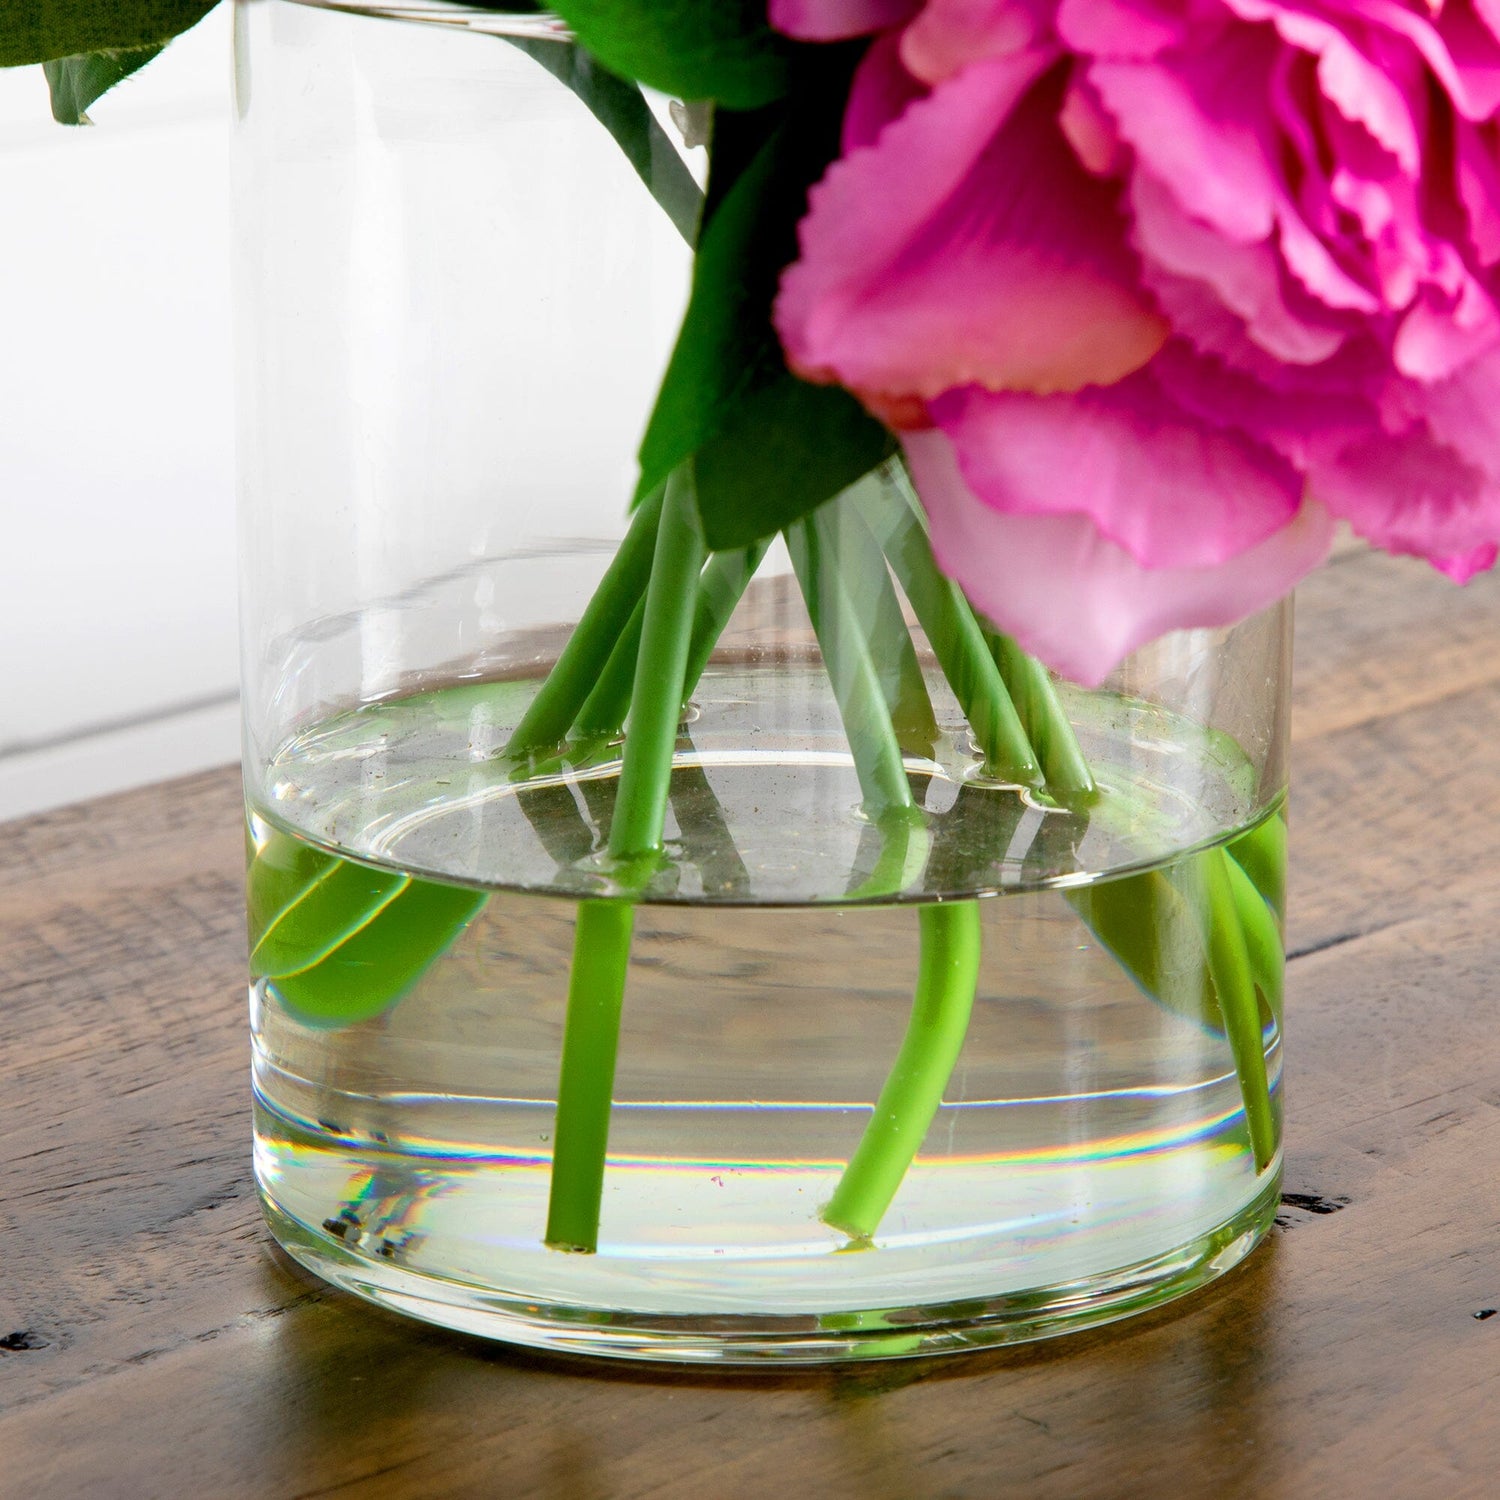 12” Artificial Peony Arrangement in Glass Vase